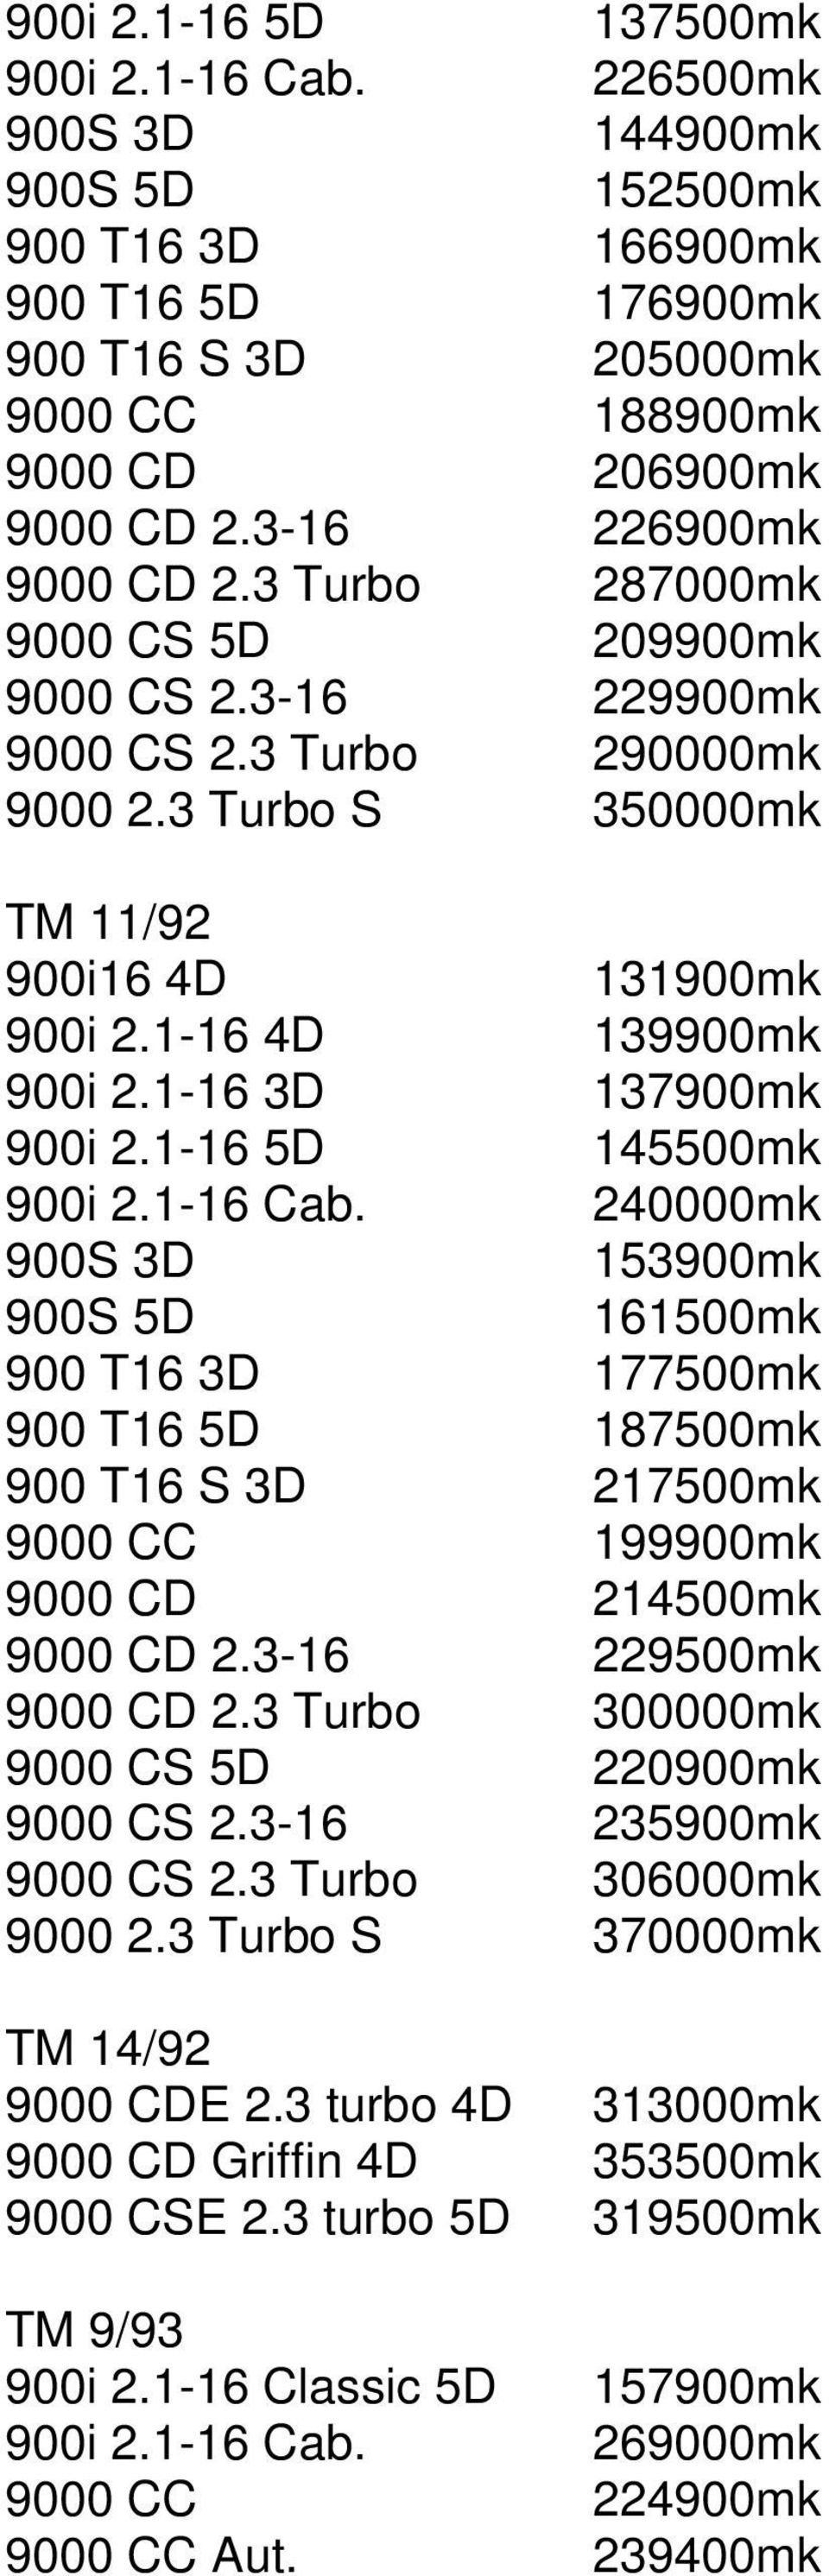 1-16 3D 137900mk 900i 2.1-16 5D 145500mk 900i 2.1-16 Cab.